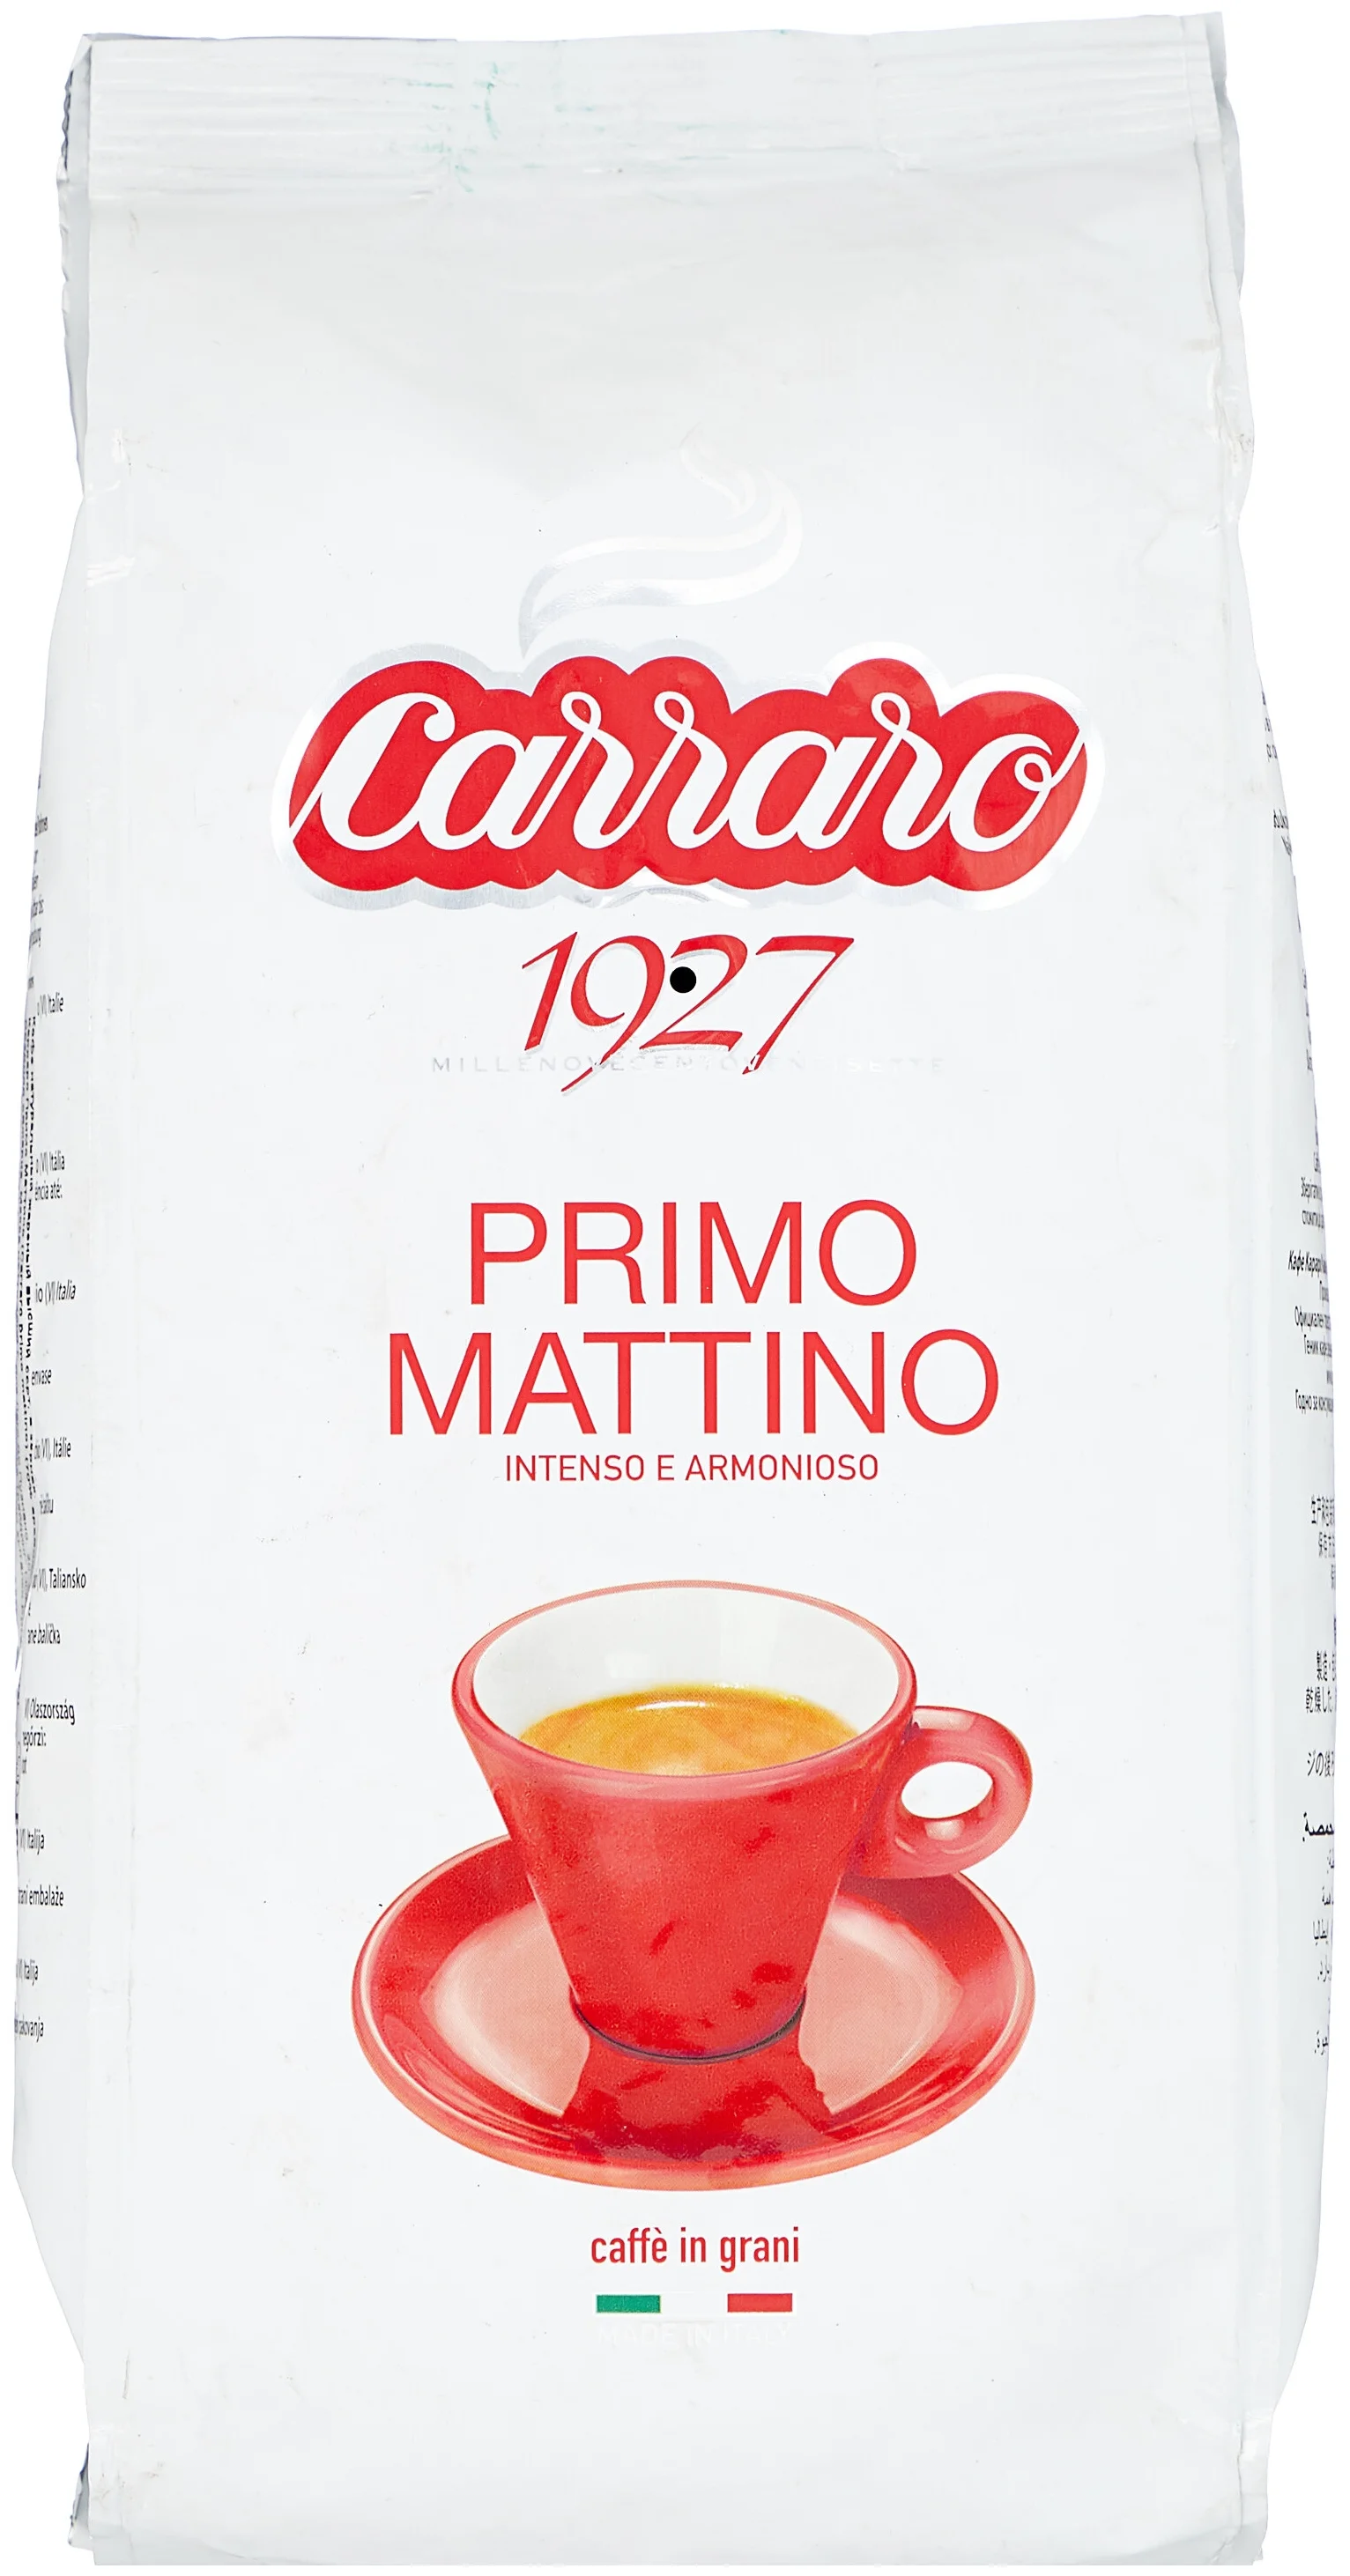 Carraro "Primo Mattino" - вид зерен: смесь арабики и робусты